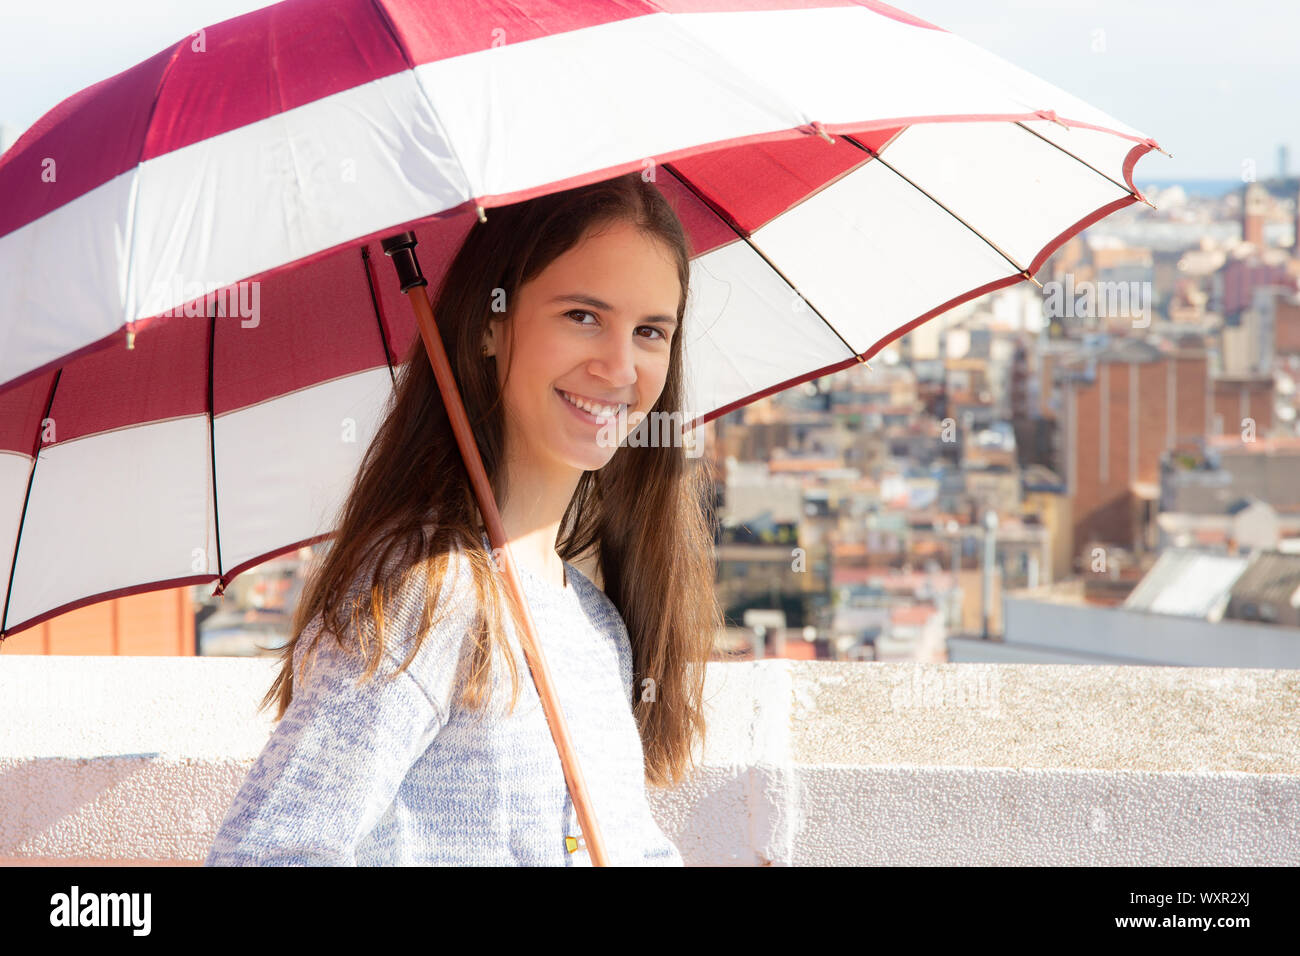 Chica adolescente protegiéndose del sol con una sombrilla en la azotea Stock Photo